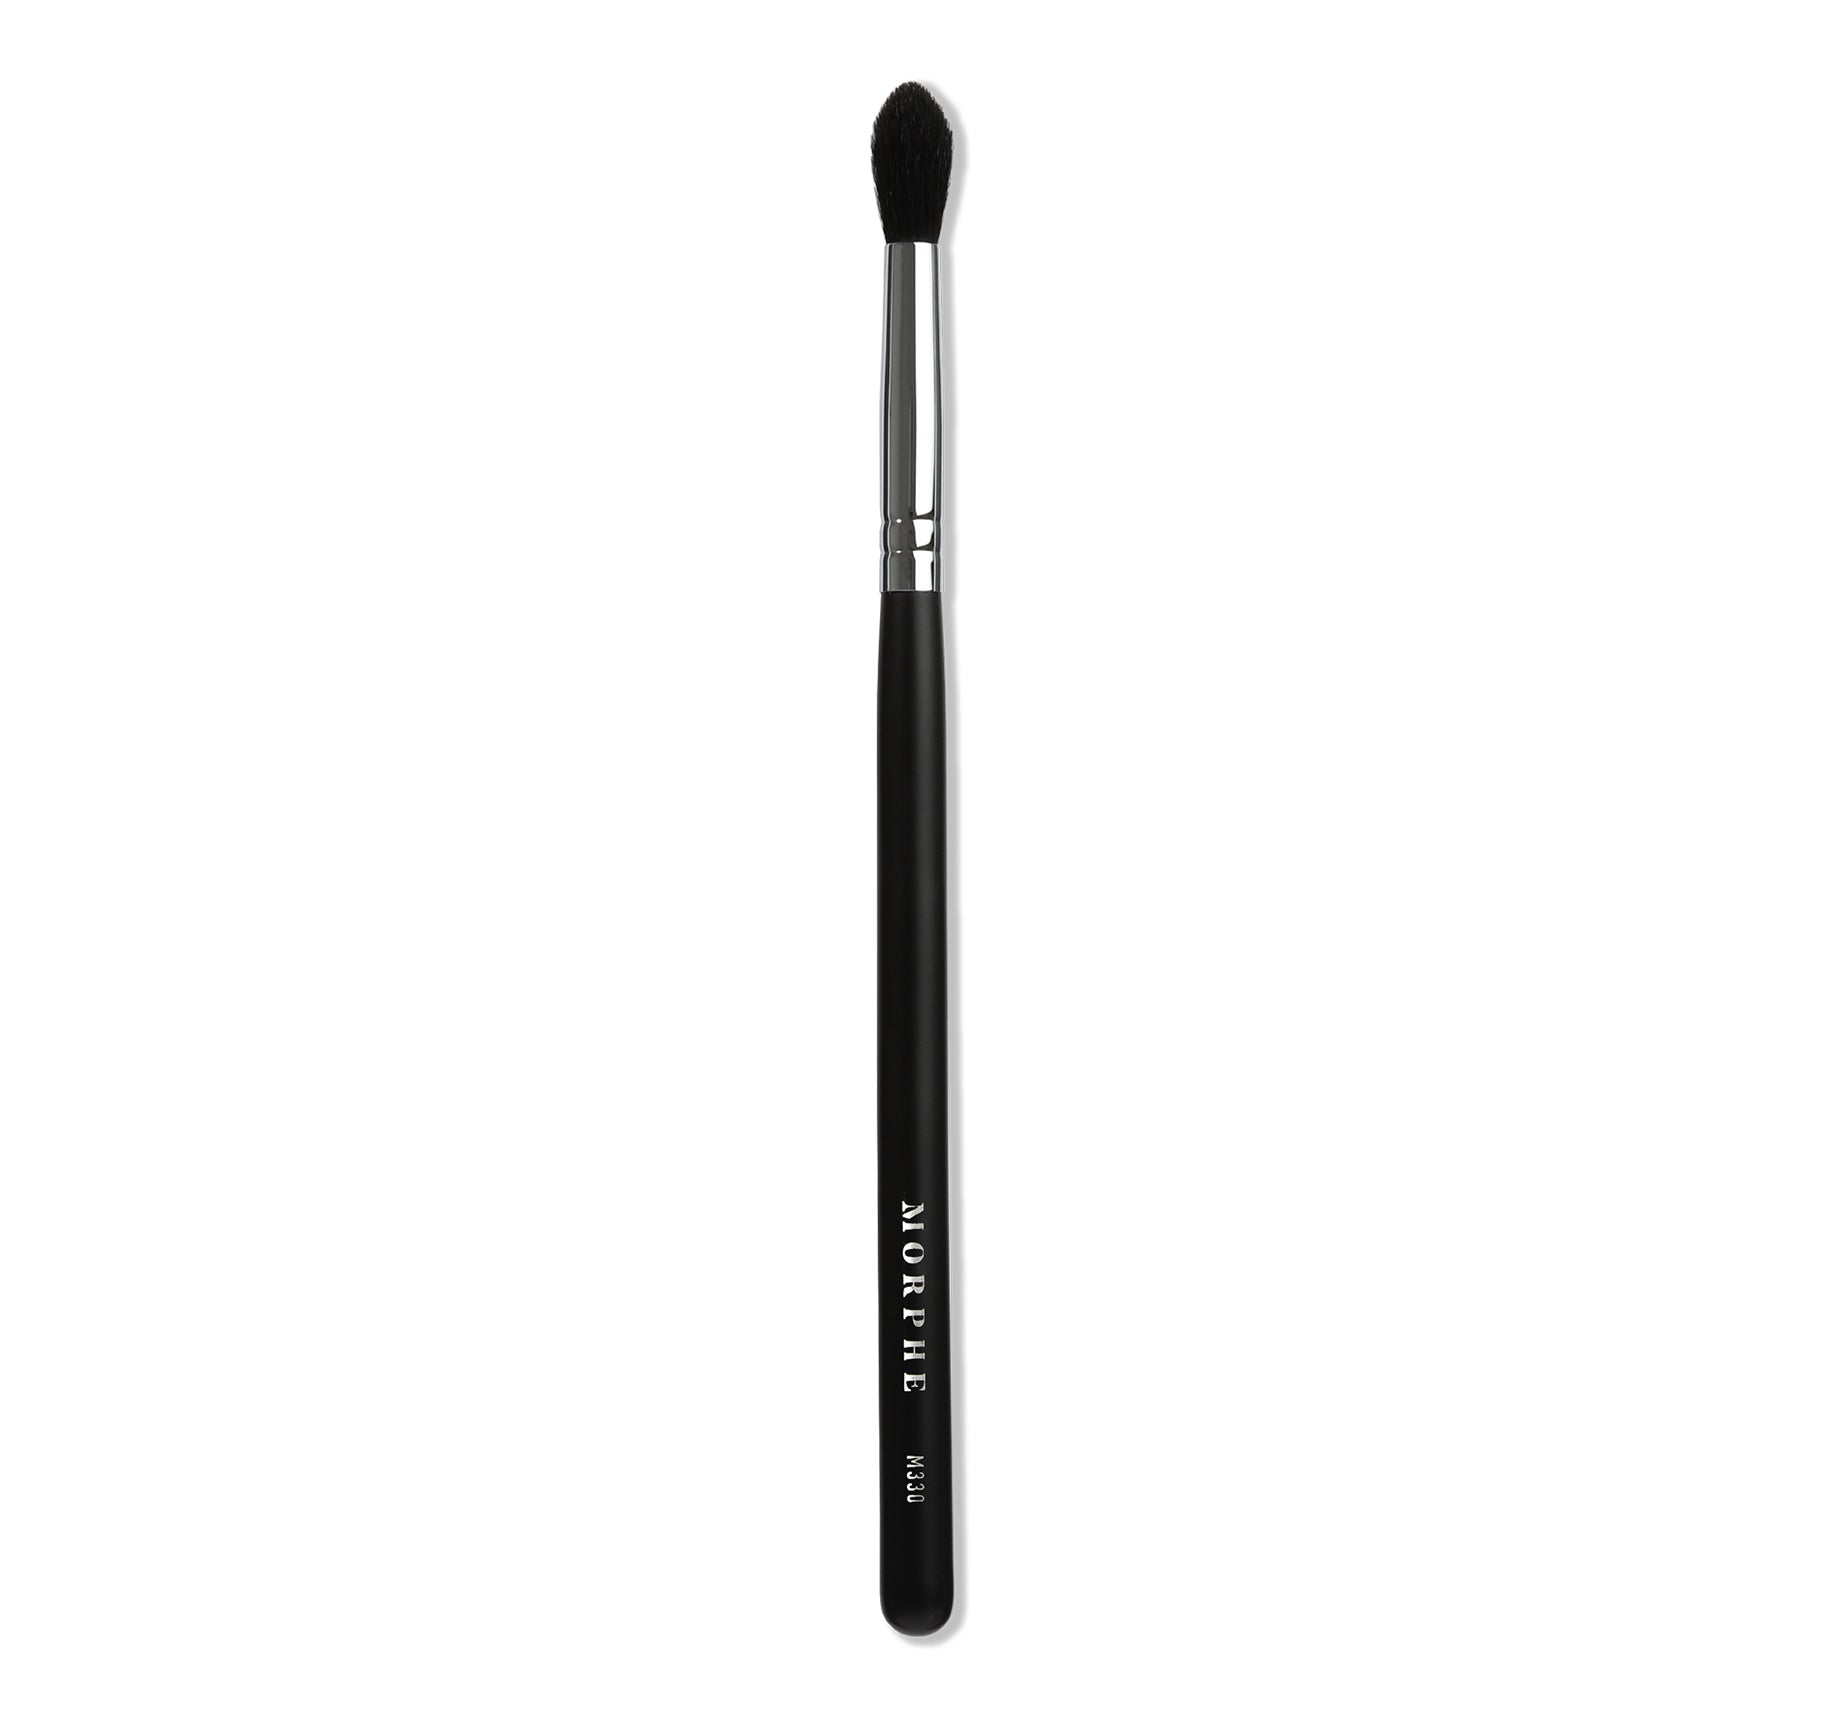 M330 - Blending Crease Eyeshadow Brush